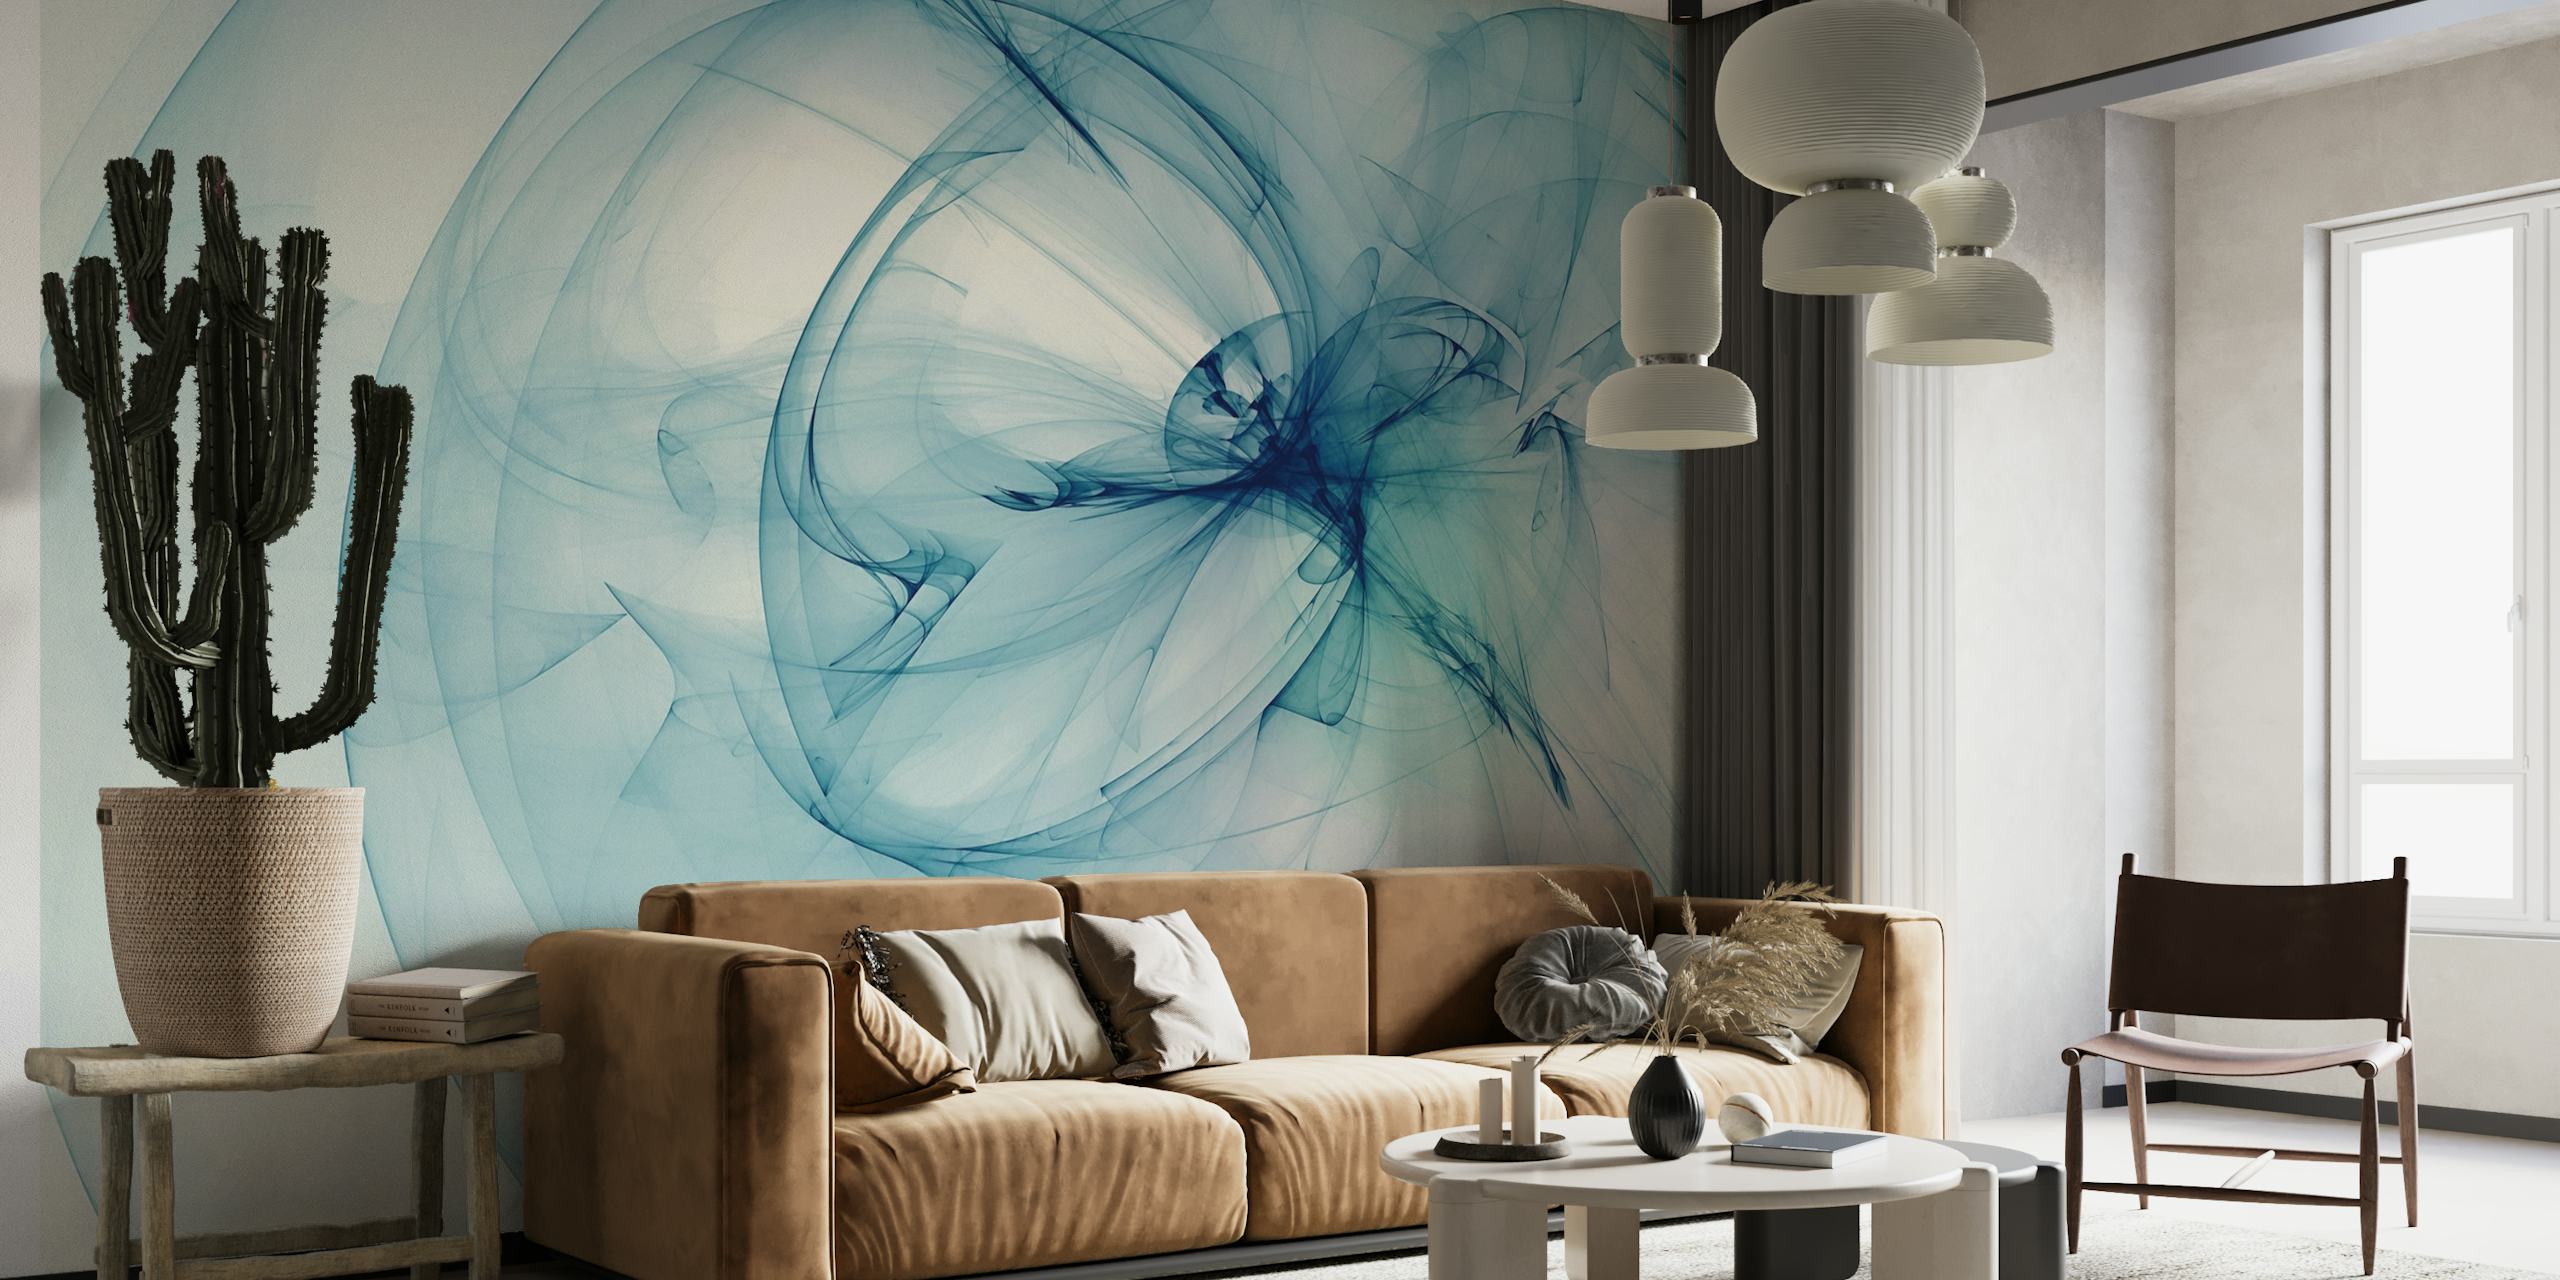 Abstract lichtblauw, rookachtig fotobehangontwerp dat rust en elegantie uitstraalt